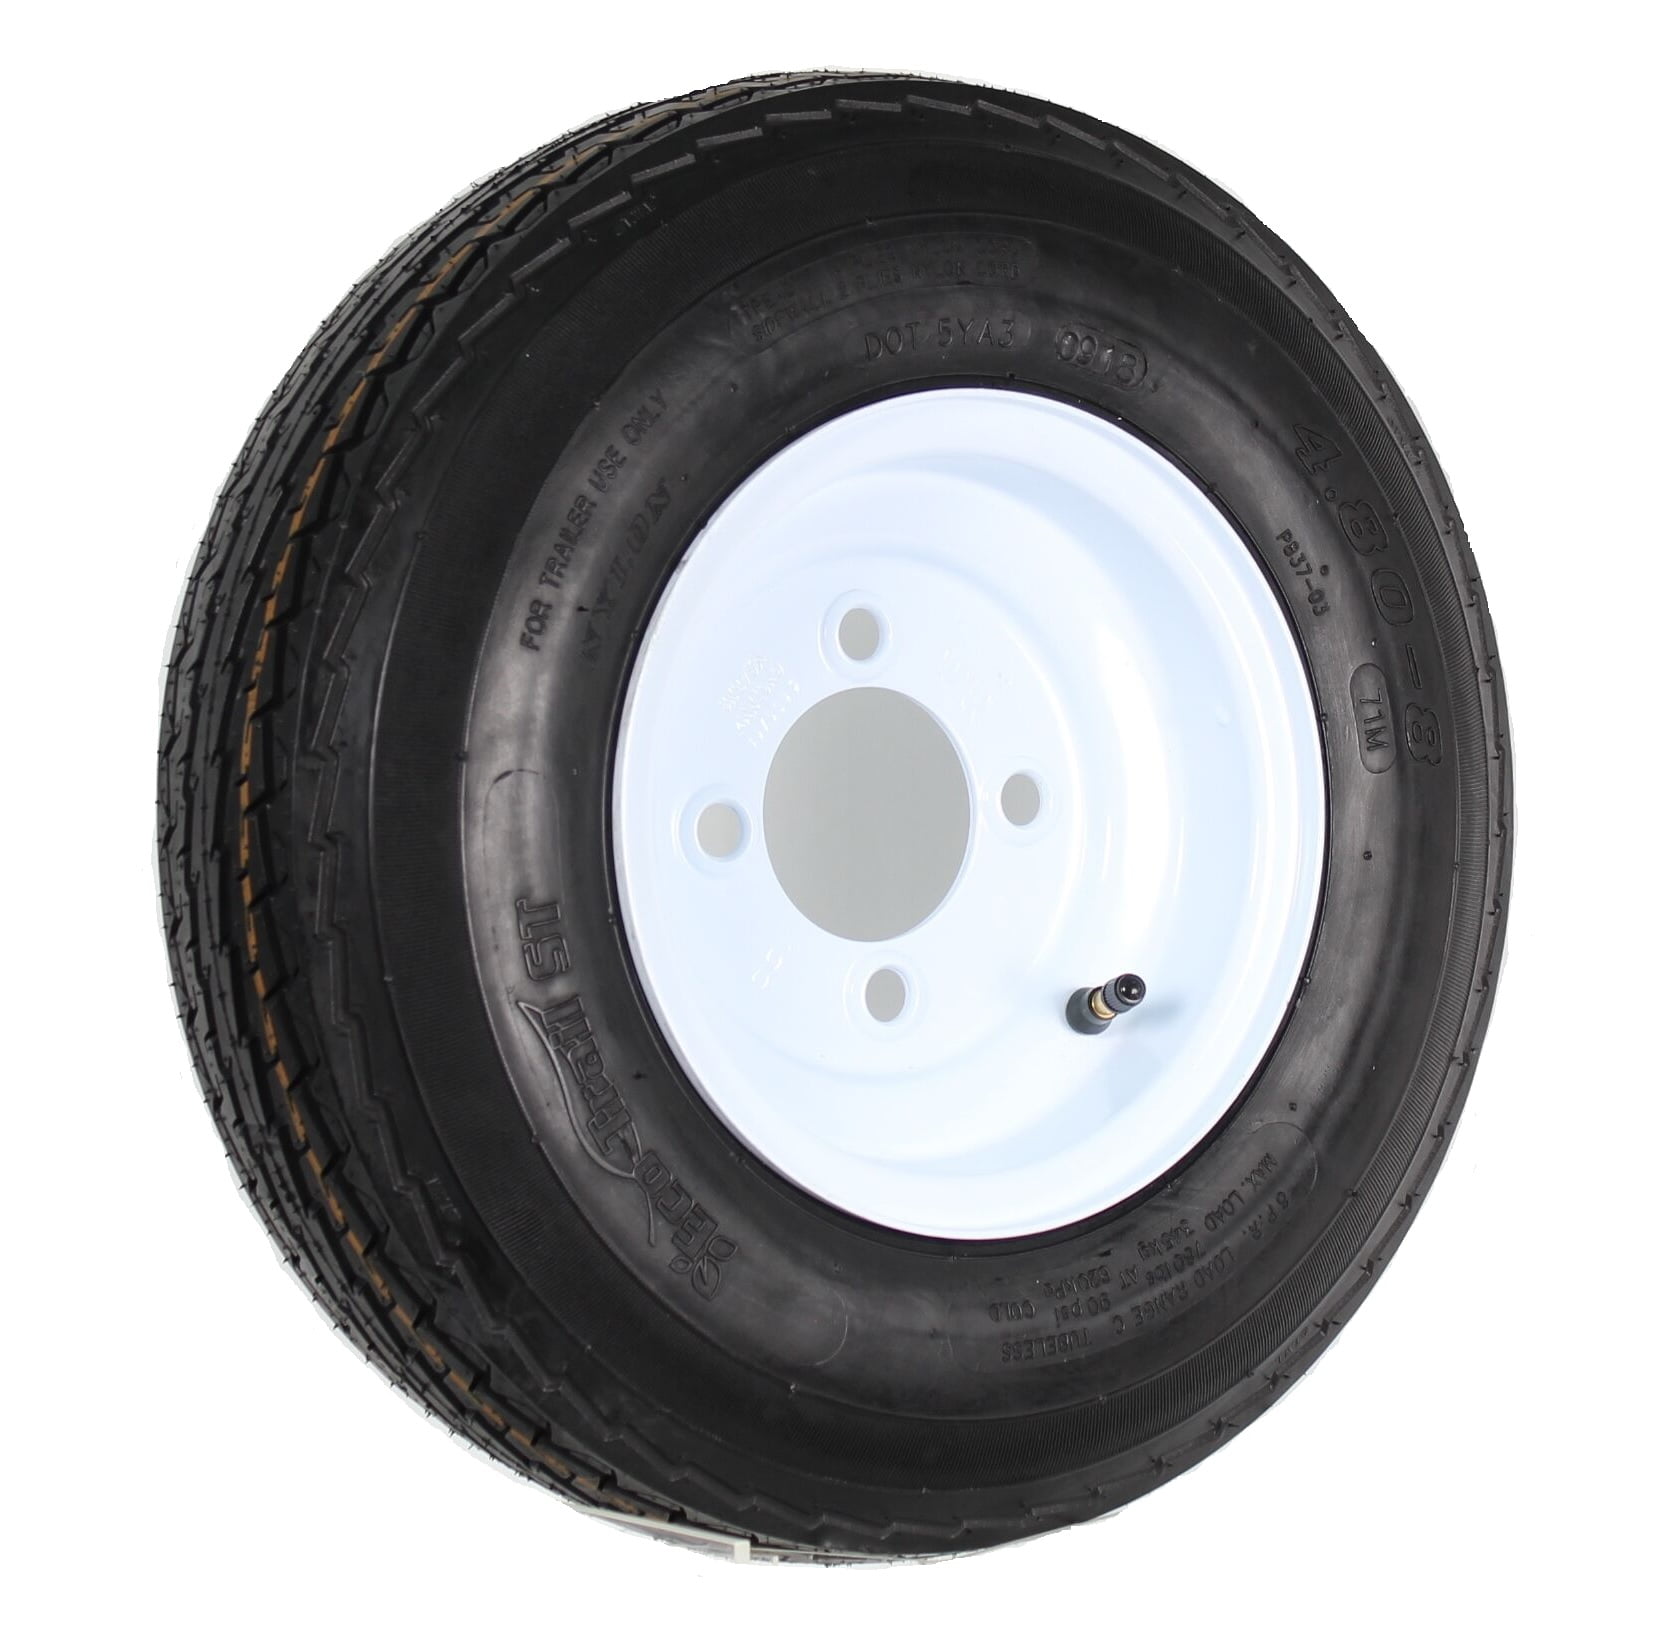 Trailer Tire On Rim 4.80-8 480-8 4.80 X 8 8 in. LRB 4 Lug Hole Bolt 4.80 4.00 X 8 Trailer Tire Pressure